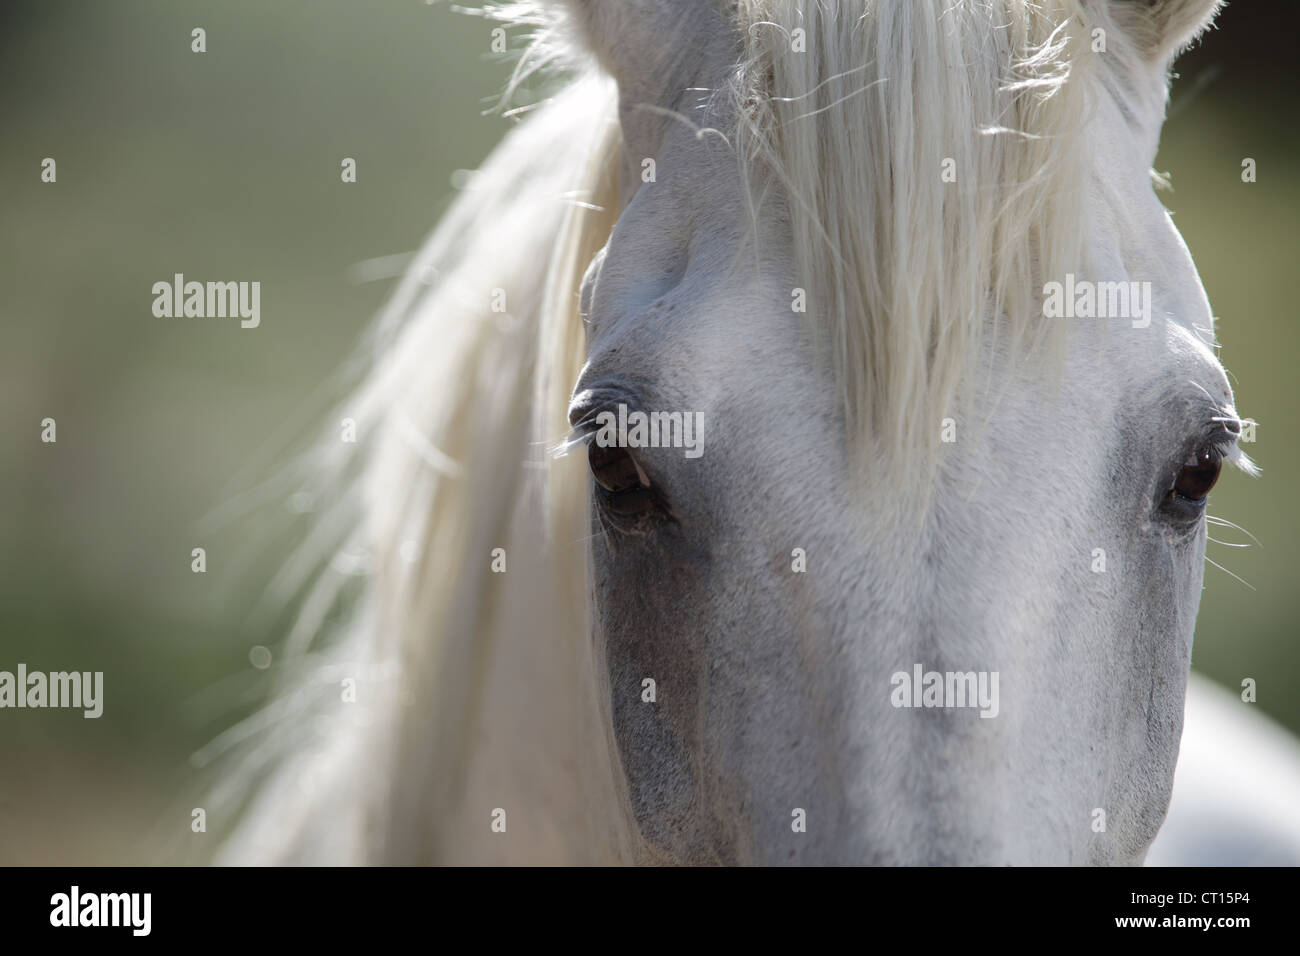 Close up of horses eyes Stock Photo